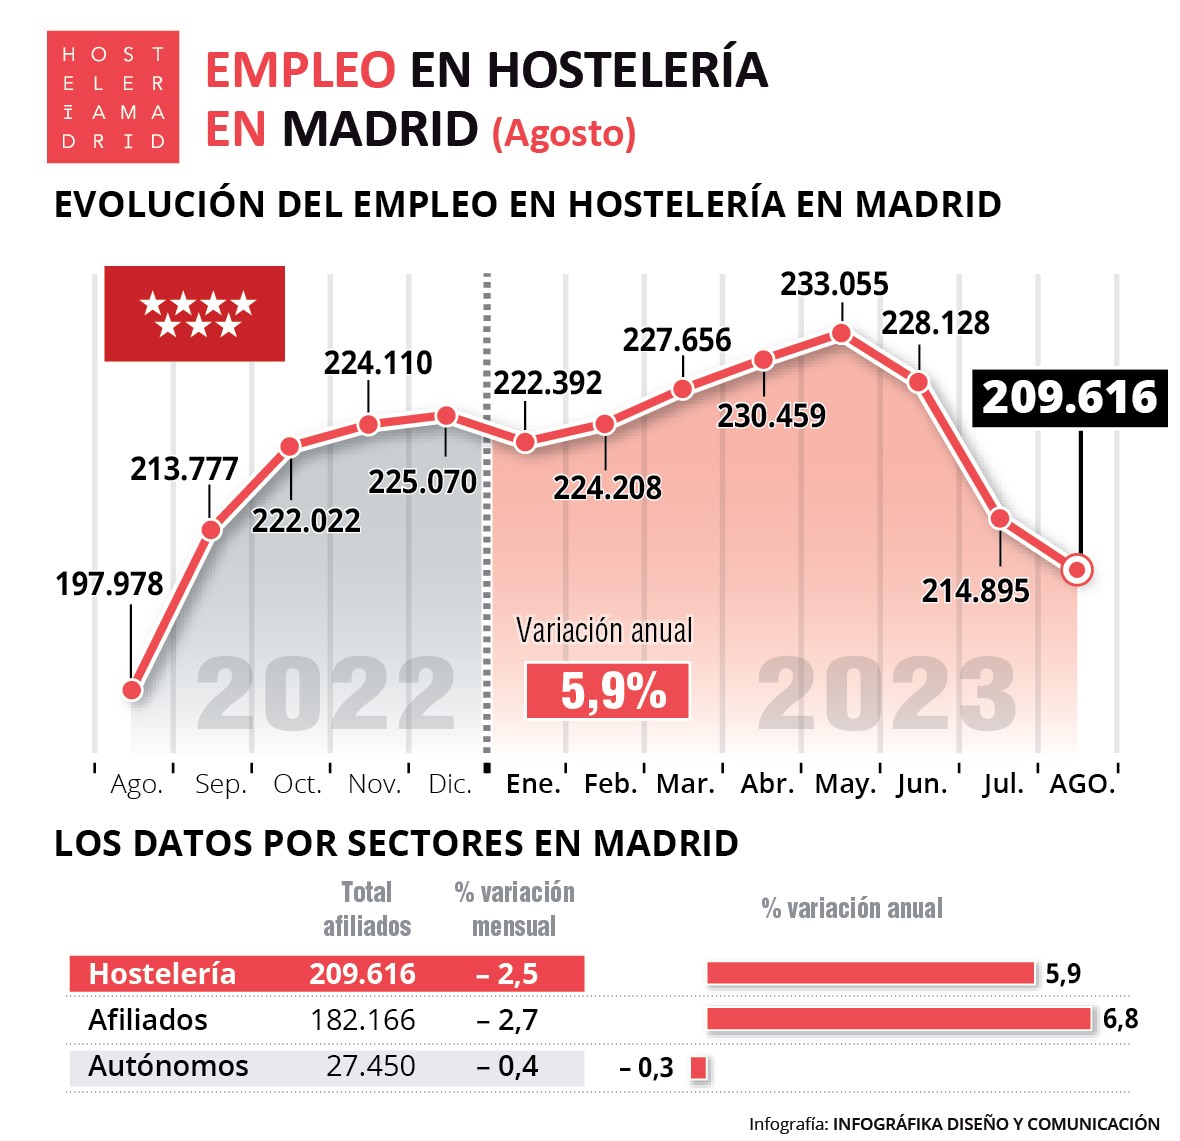 La hostelería de Madrid registra en agosto 209.616 trabajadores, un 5,9% más que agosto del pasado año - La Viña